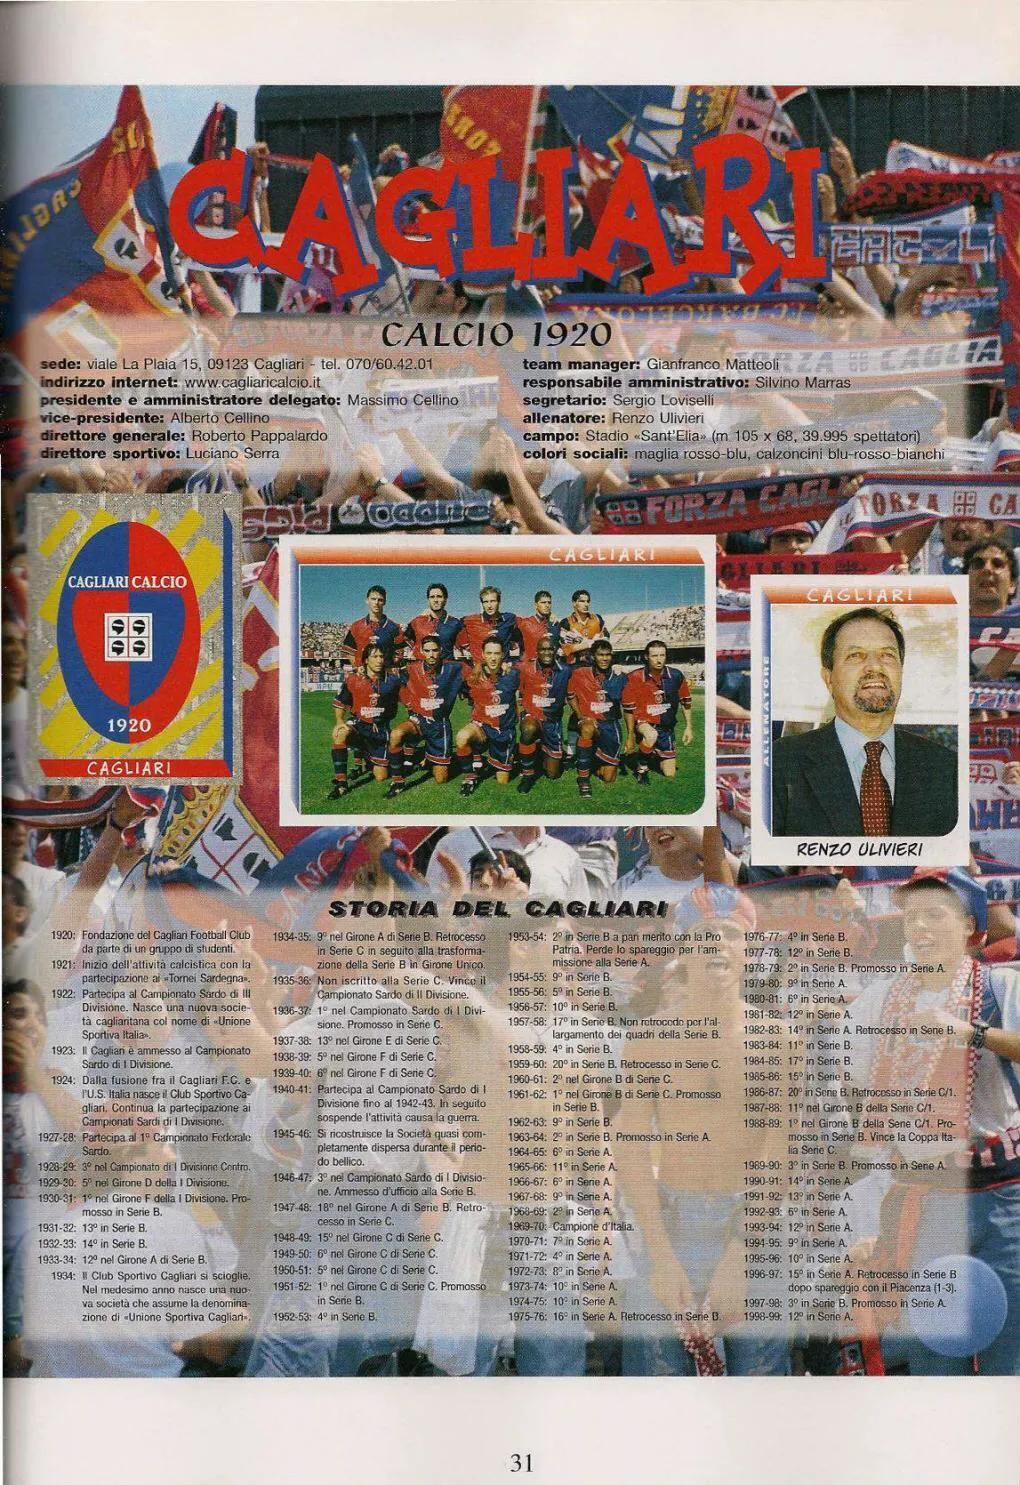 「忆意甲」一本意大利足球画册带你回顾1999/00赛季意甲联赛